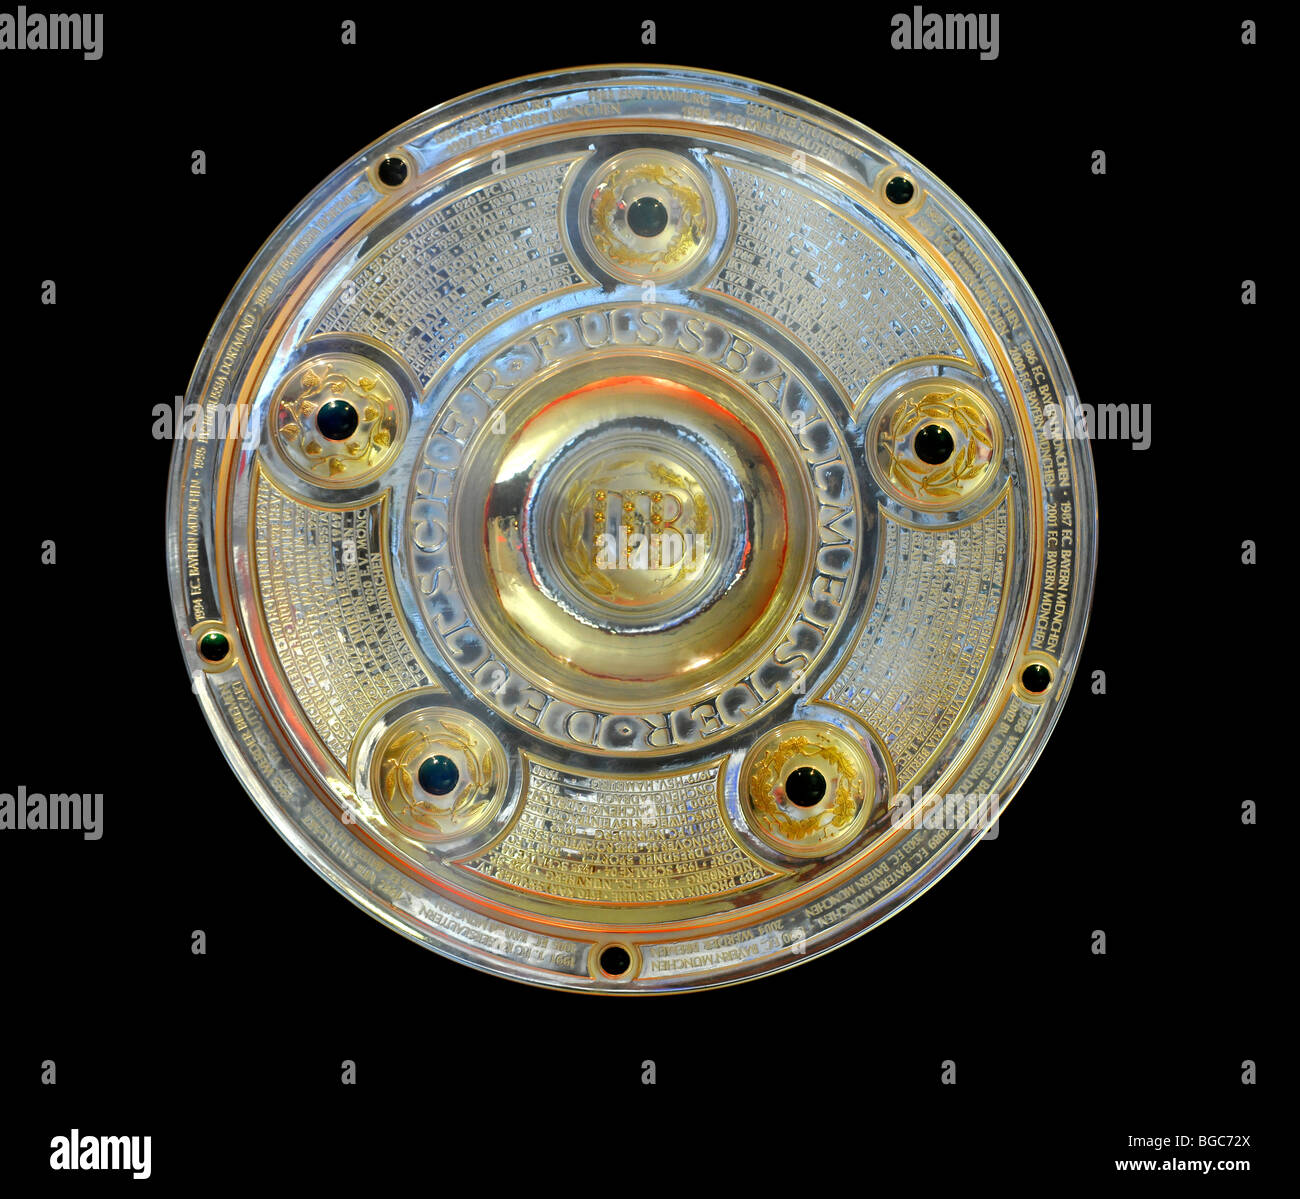 Meisterschale, Deutsche Bundesliga deutsche Fußball Liga Meisterschale, Ausschnitt Stockfoto